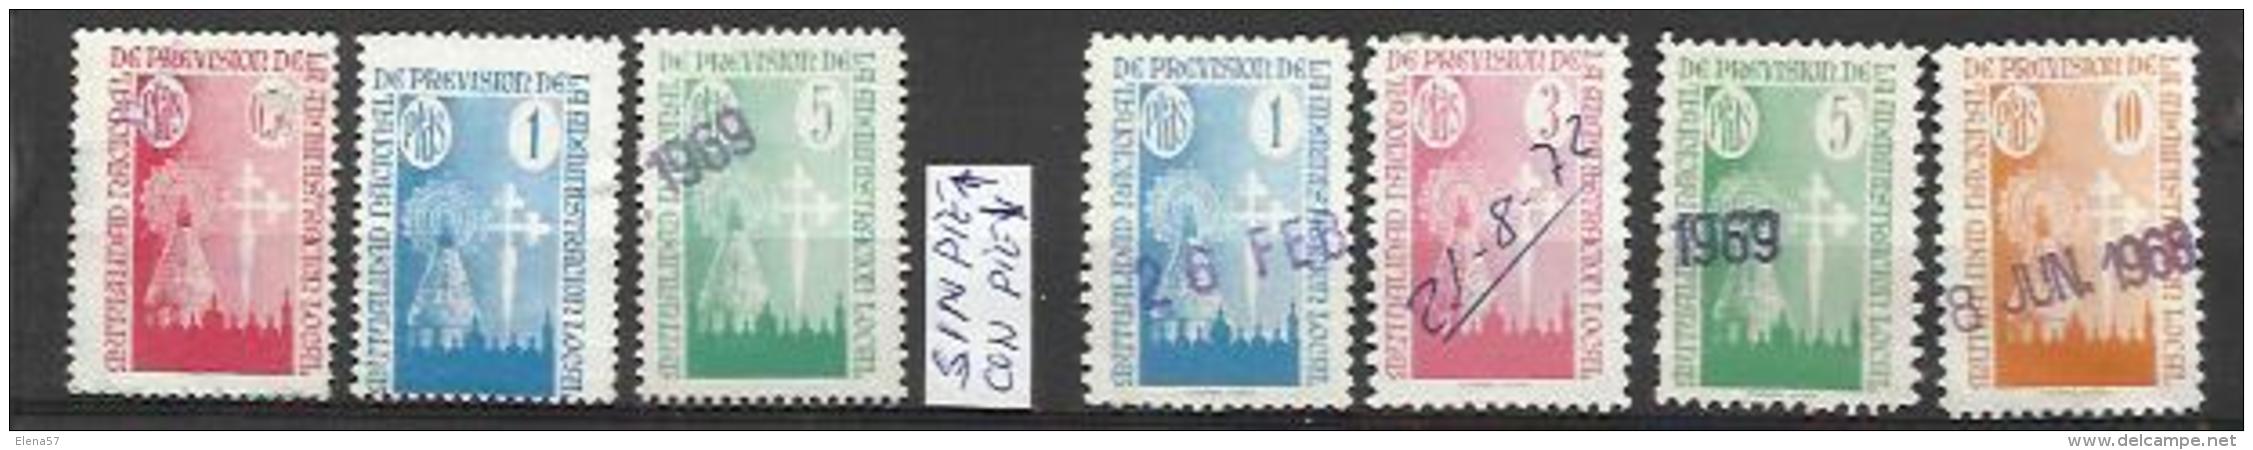 9204-ATENCION Con Y SIN PIE DE IMPRENTA,SELLOS FISCALES MUTUALIDAD NACIONAL DE PREVISION DE LA ADMINISTRACION LOCAL - Revenue Stamps